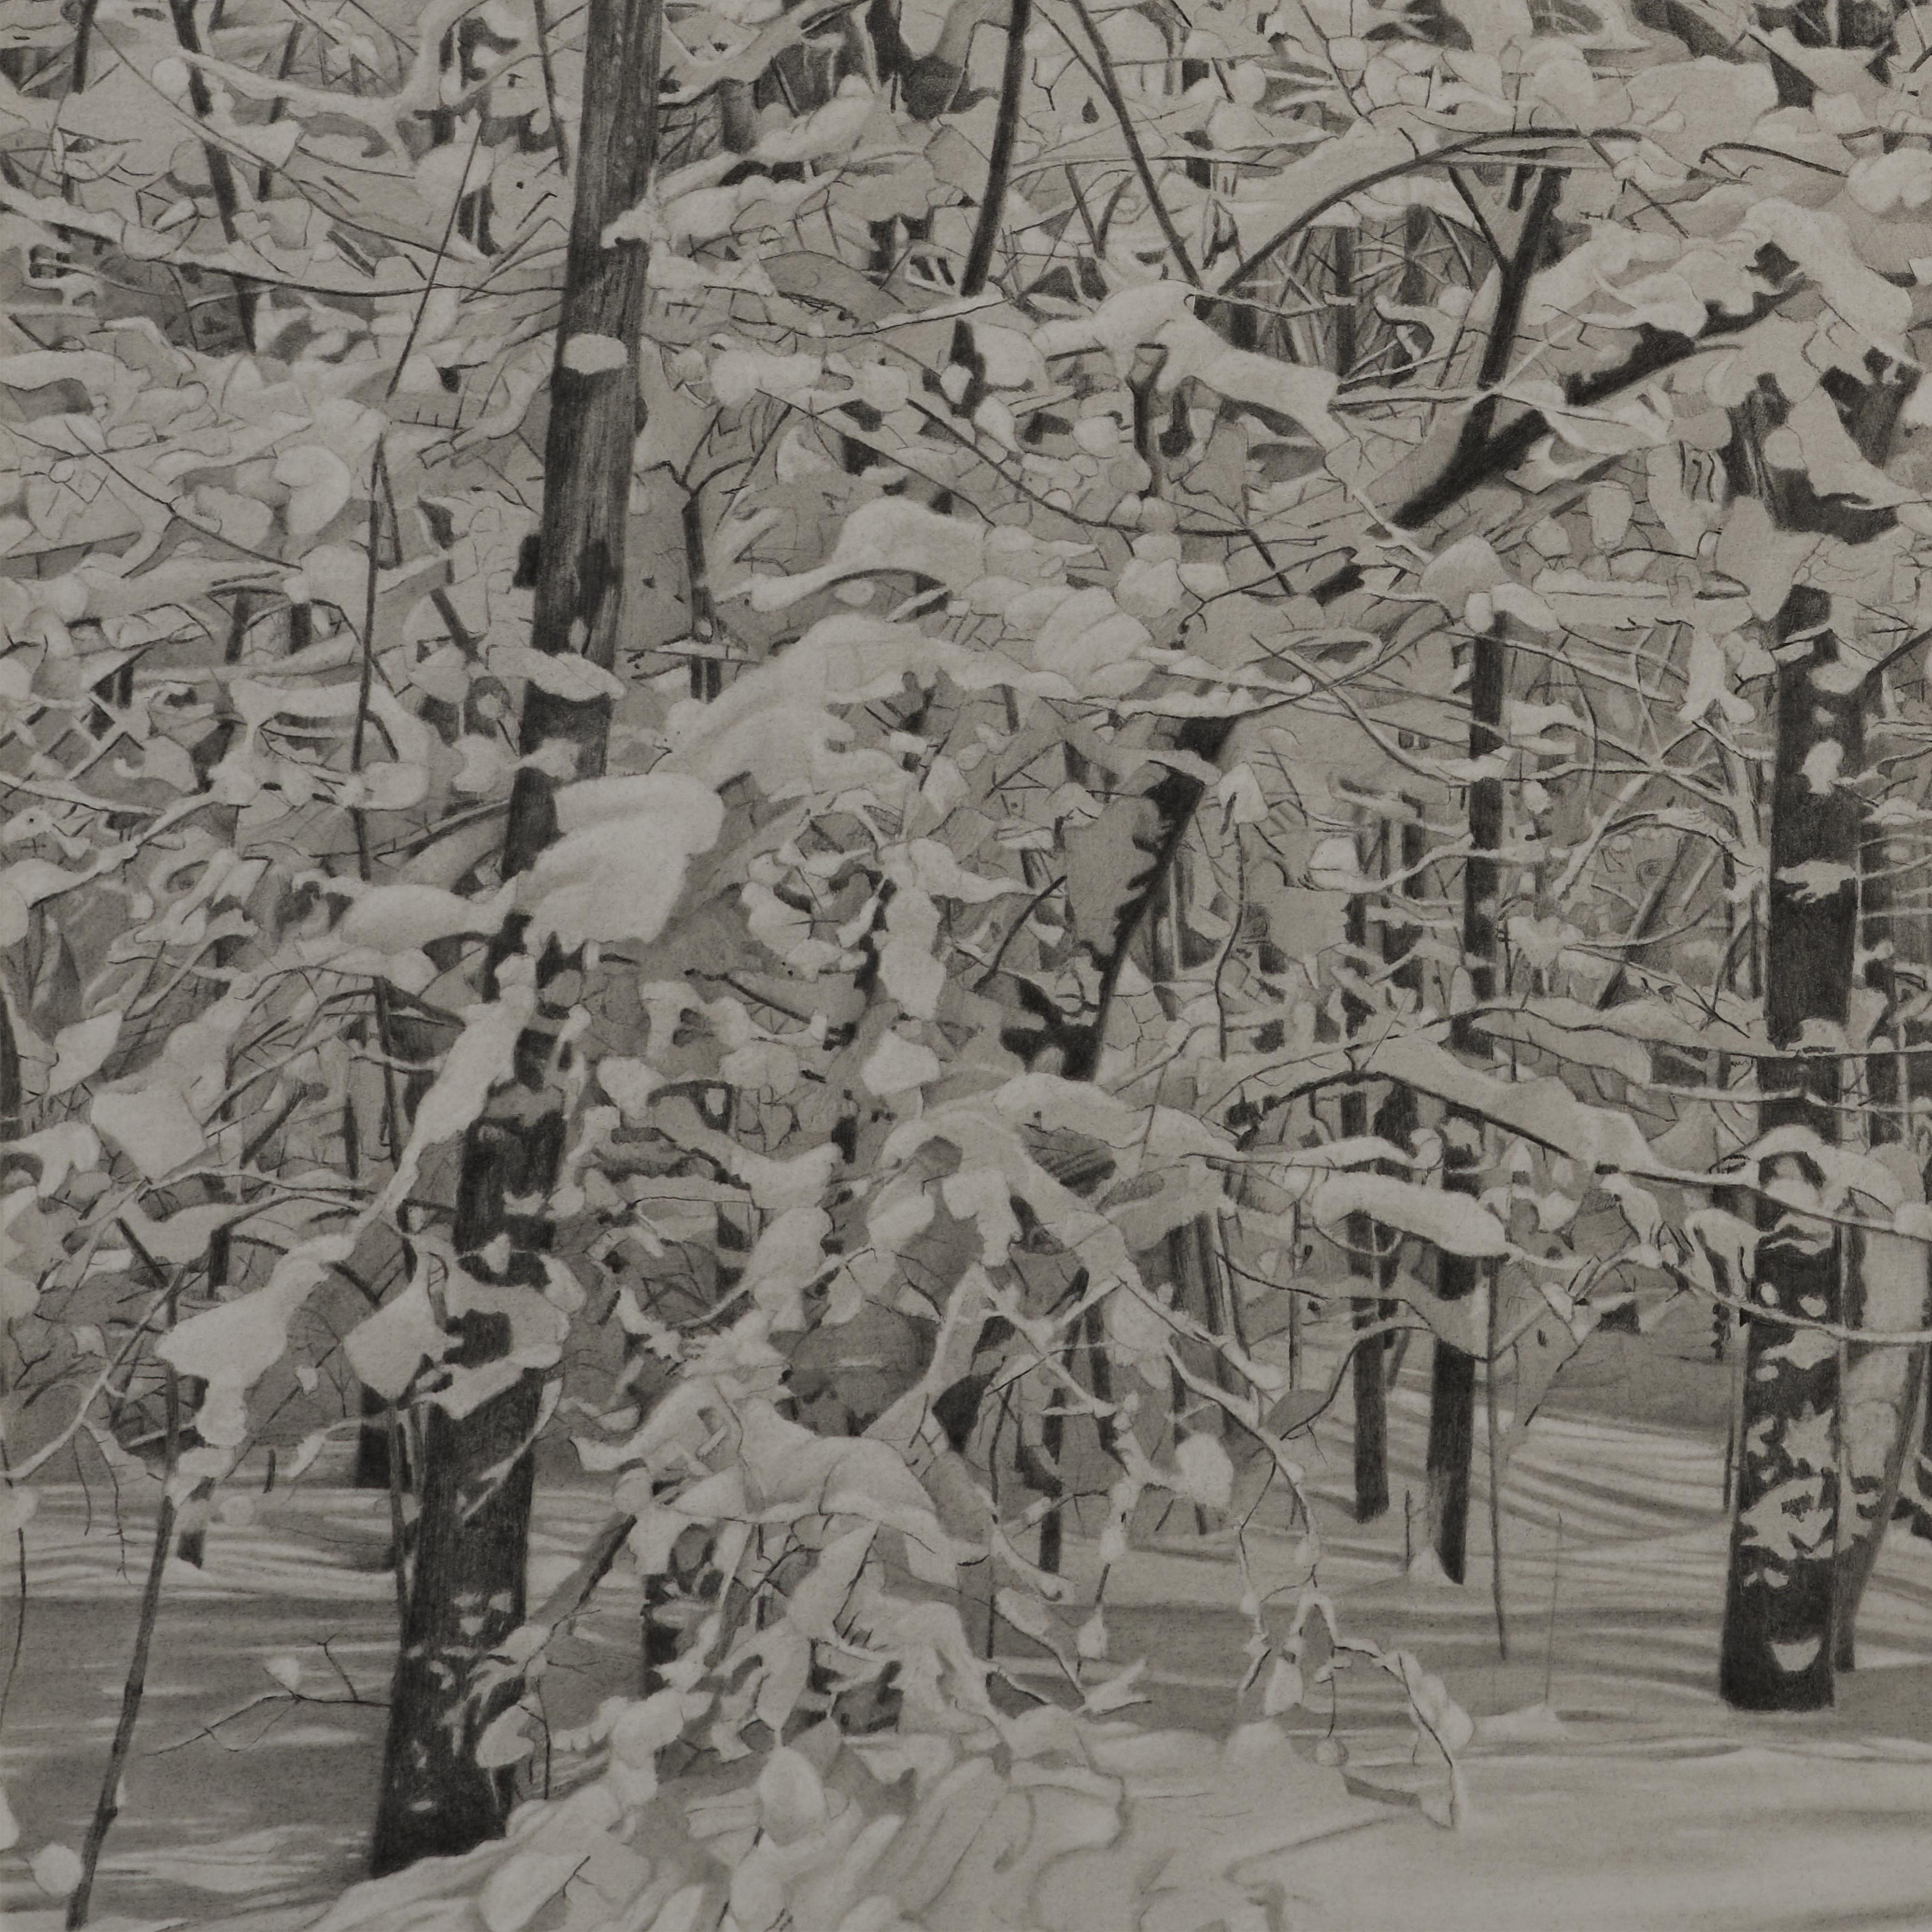 Snowy Woods, fotorealistische Graphit-Landschaftszeichnung, 2023 – Art von Mary Reilly